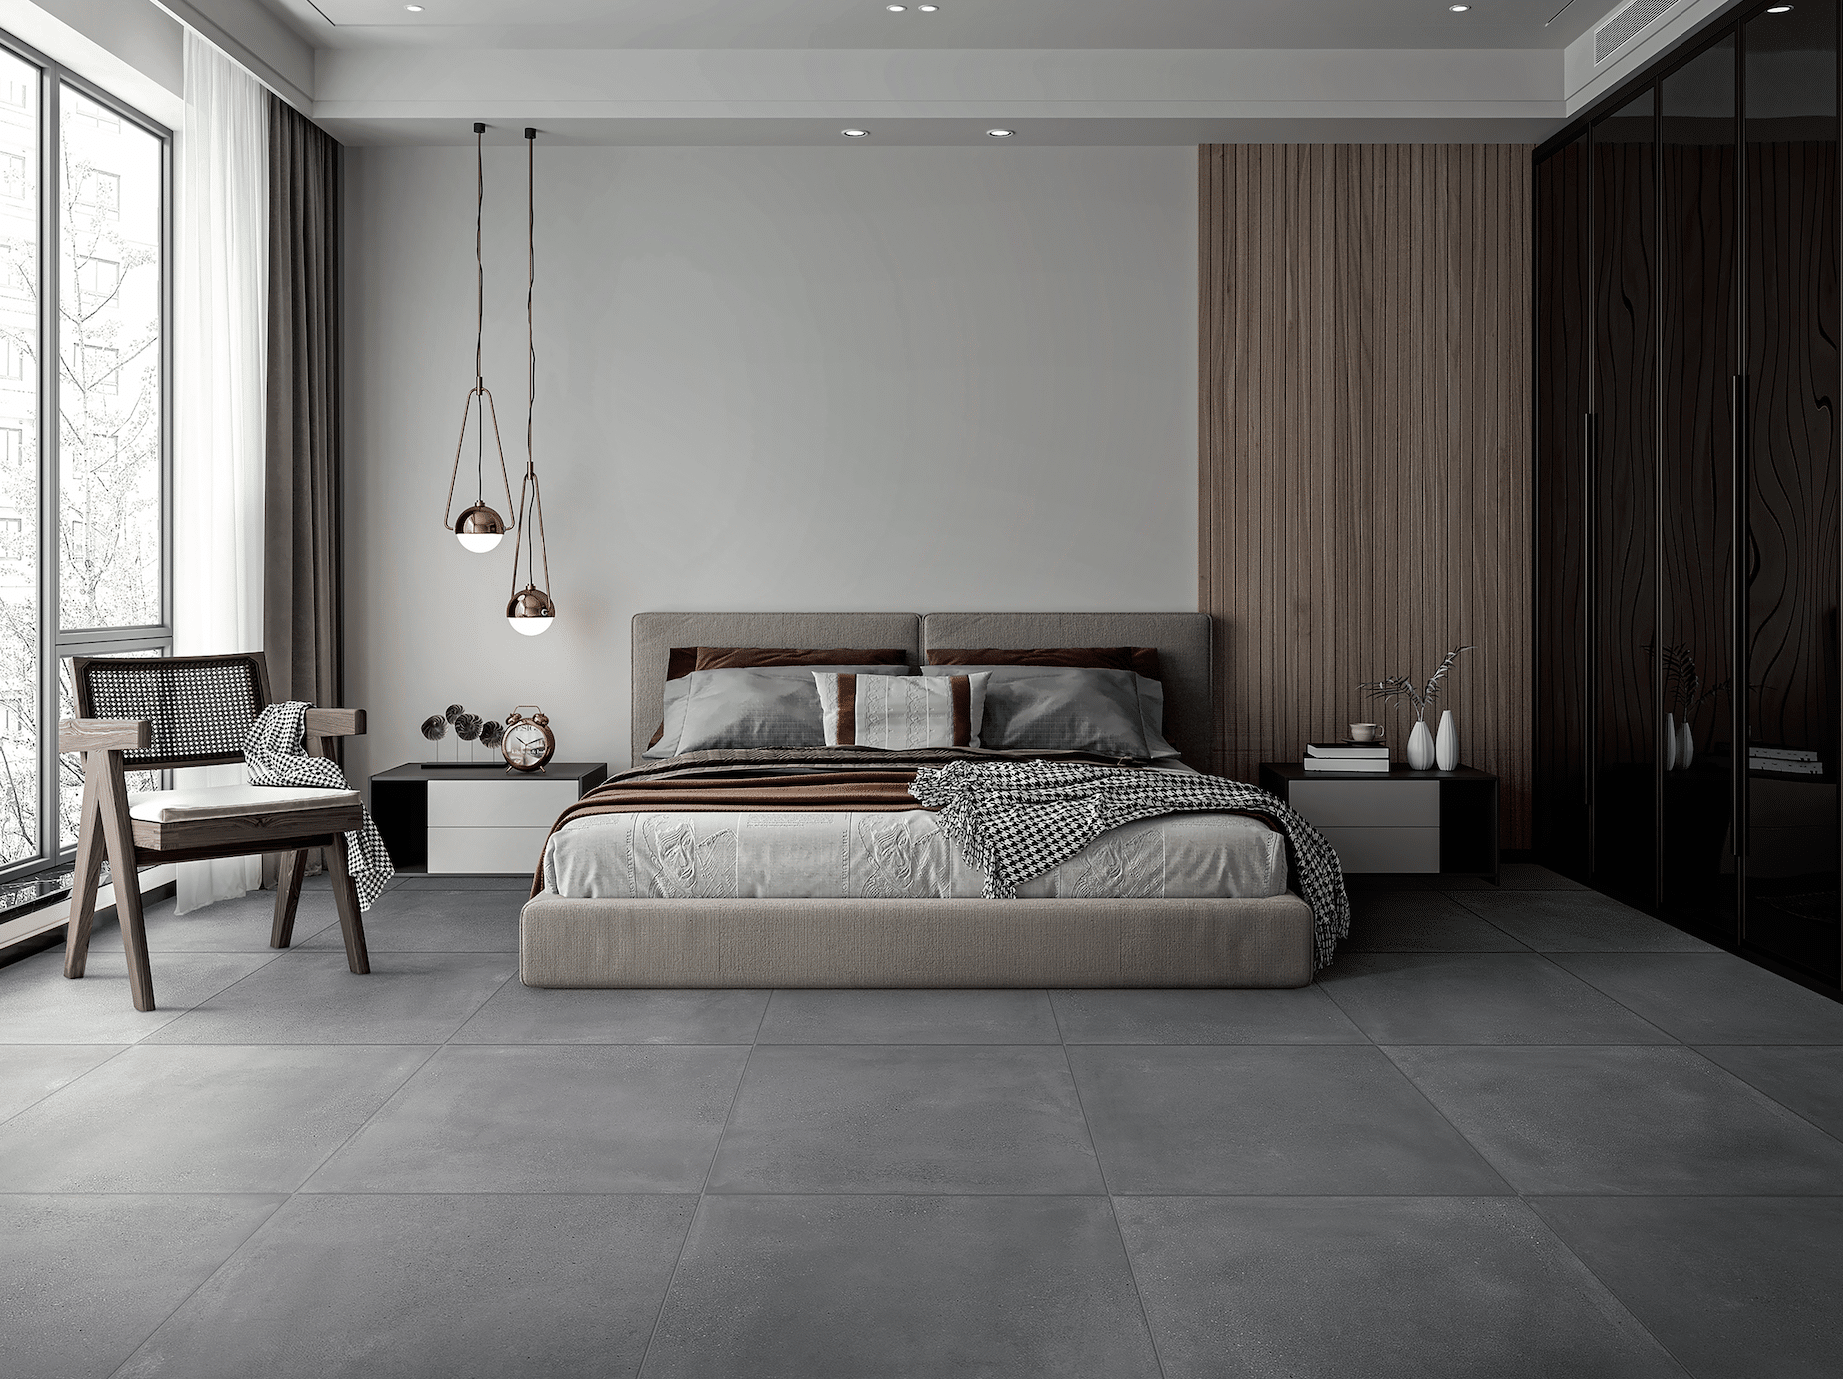 C. Bergmann zeigt ein Schlafzimmer in Naturtönen mit grauem Fliesenboden, beigem Doppelbett und einem gemütlichen Holzsessel von Abitare.